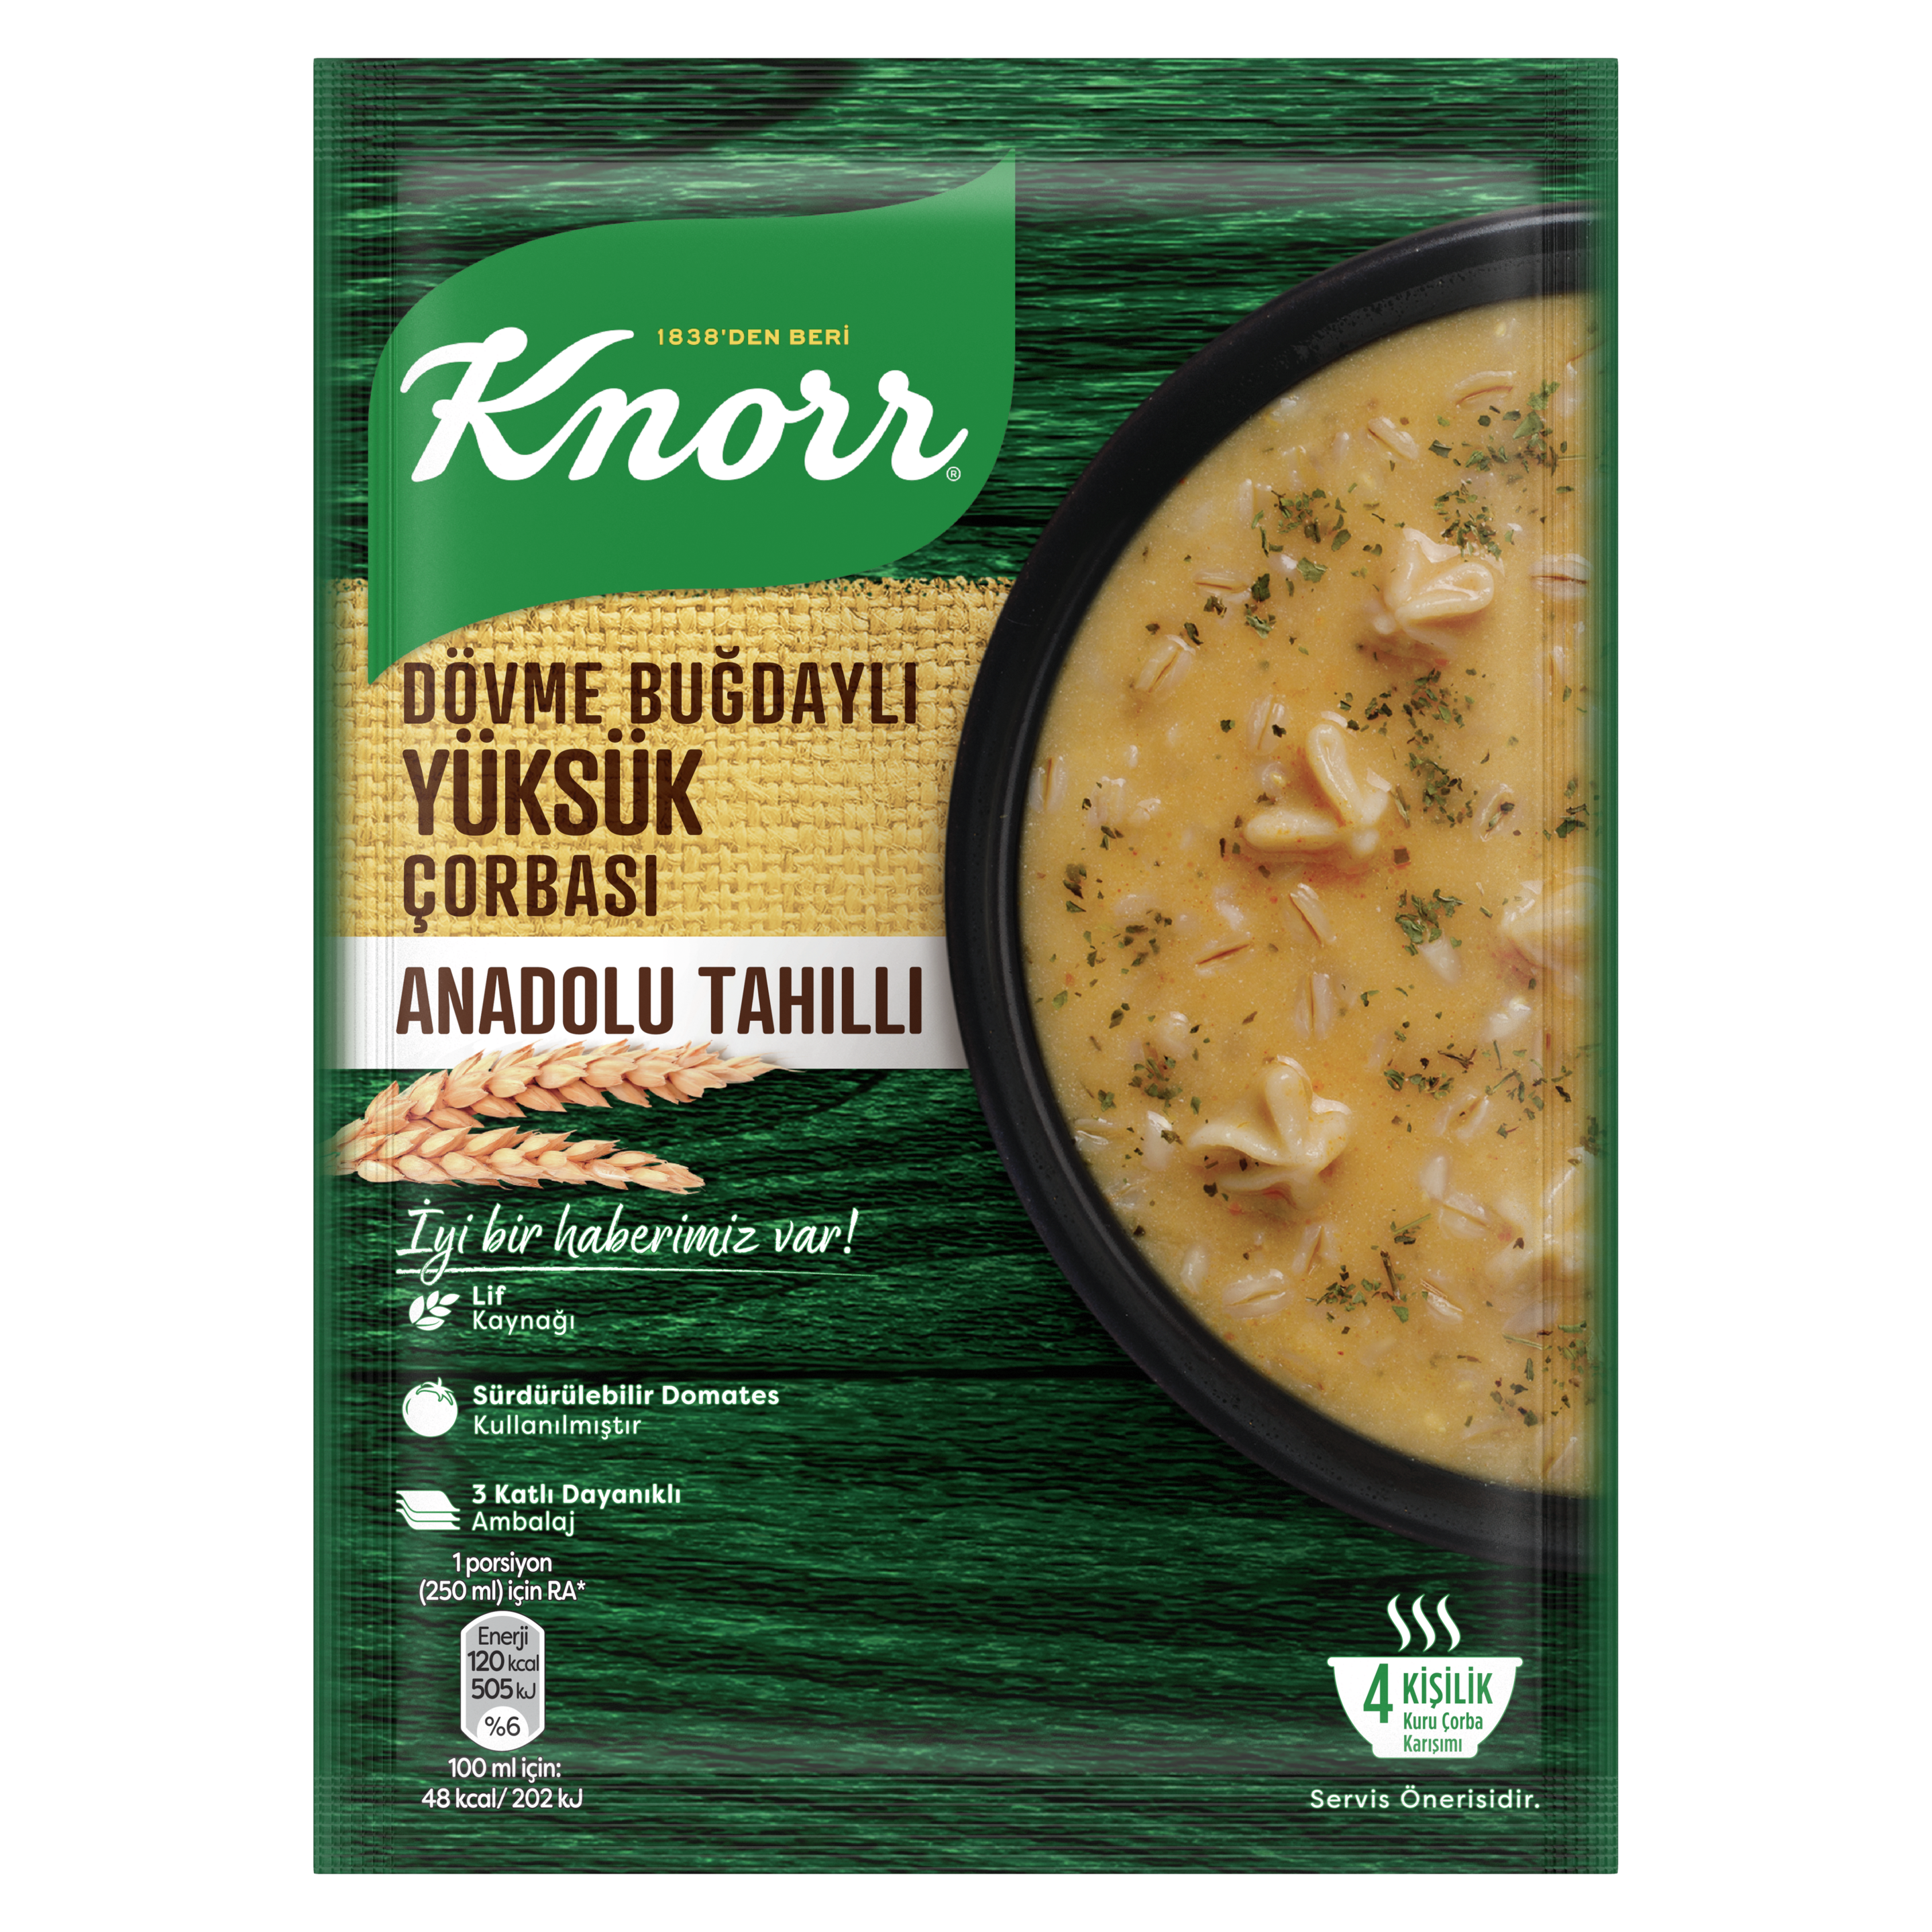 Knorr Dövme Buğdaylı Yüksük Çorbası